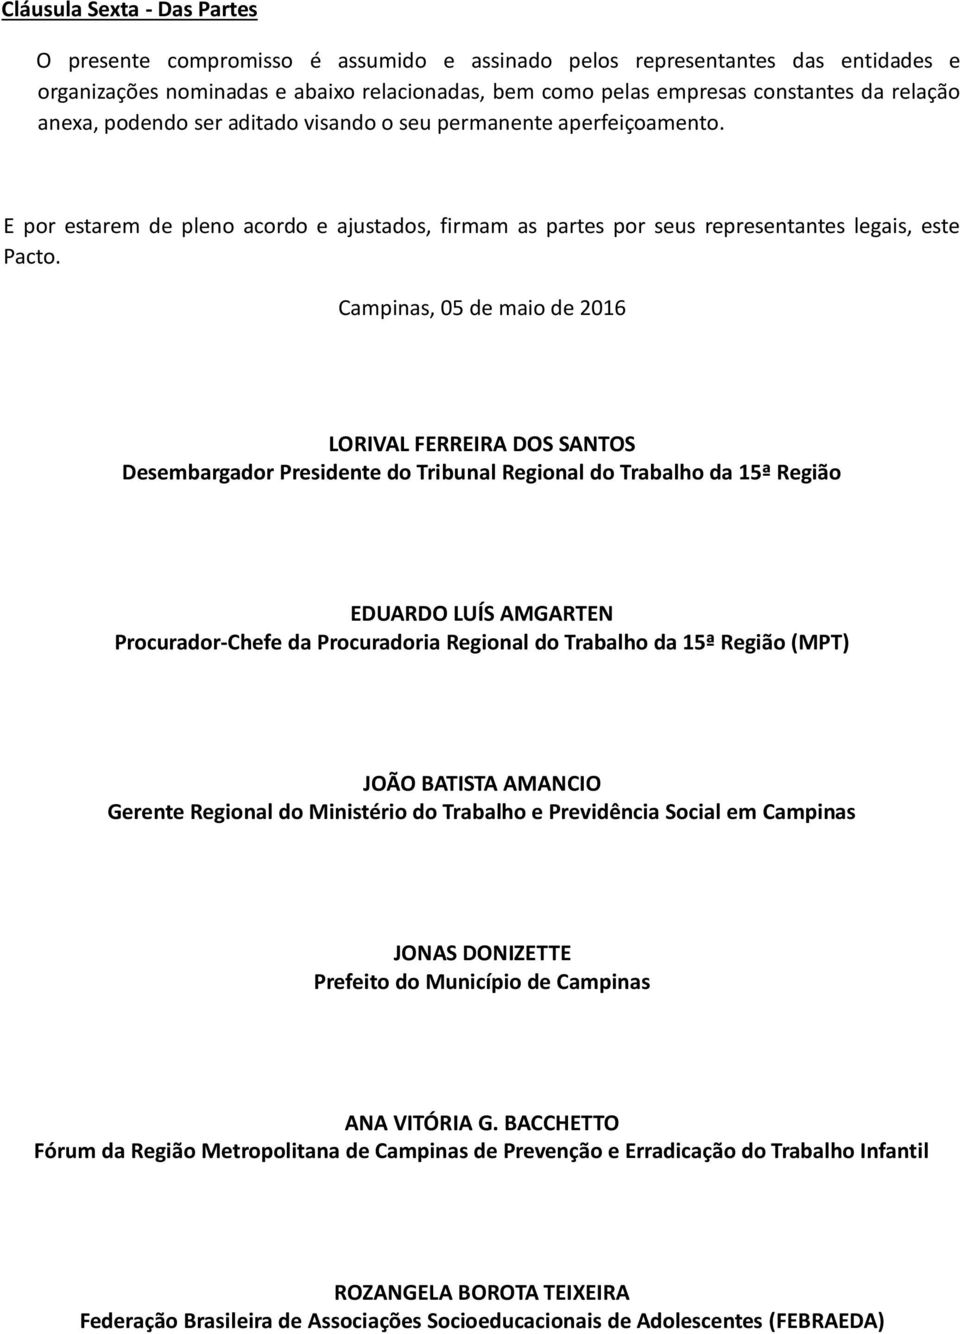 Campinas, 05 de maio de 2016 LORIVAL FERREIRA DOS SANTOS Desembargador Presidente do Tribunal Regional do Trabalho da 15ª Região EDUARDO LUÍS AMGARTEN Procurador-Chefe da Procuradoria Regional do